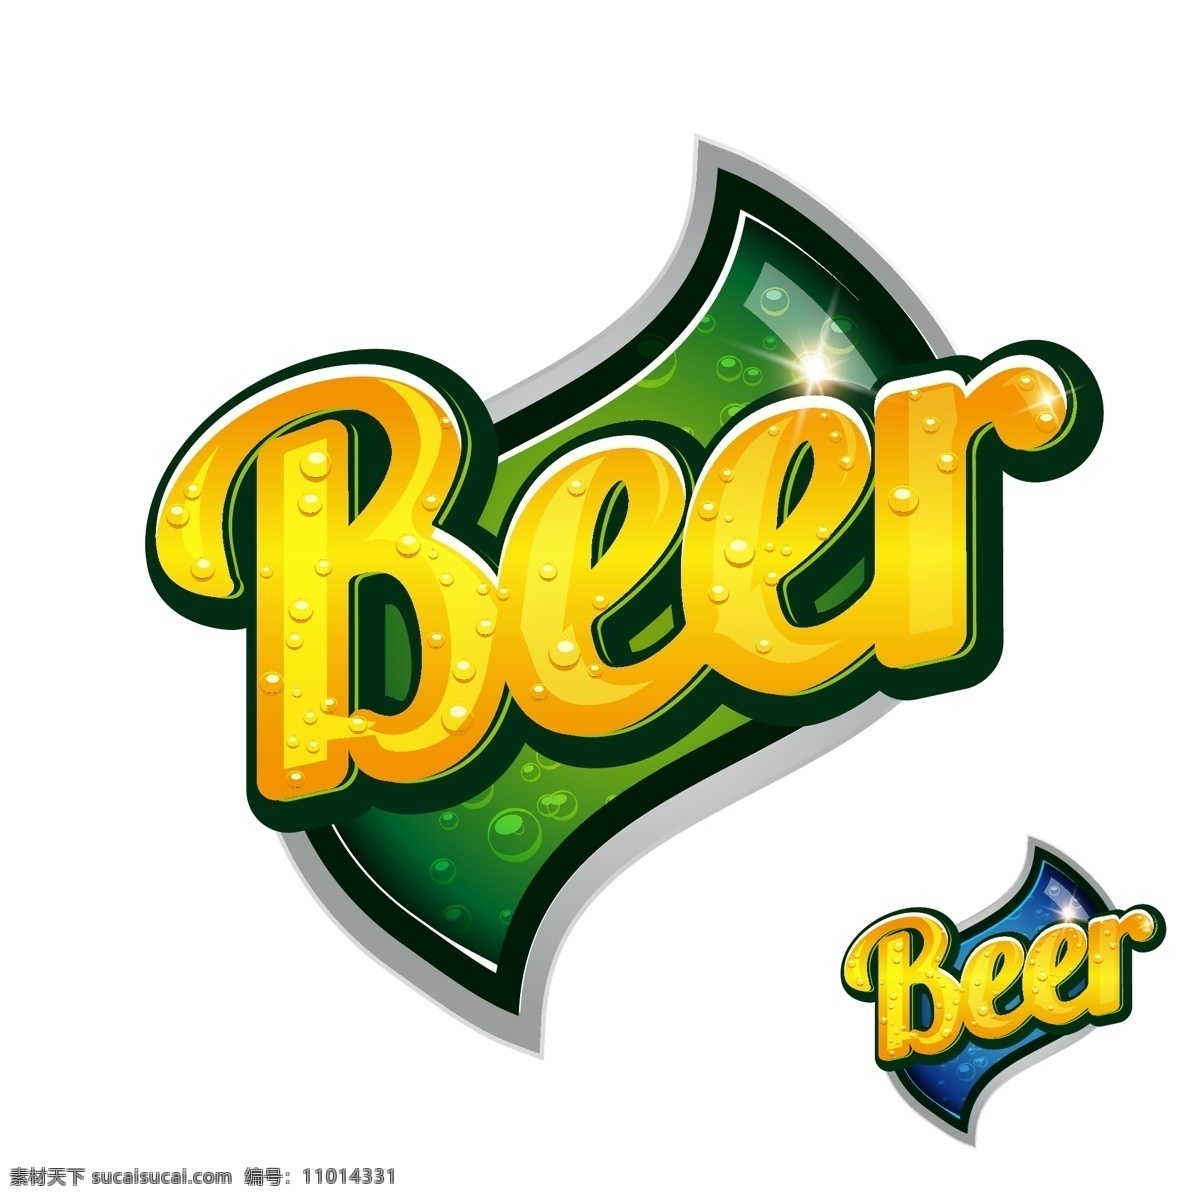 logo logo设计 标识 标志 标志设计 抽象背景 抽象设计 广告页 啤酒 矢量 模板下载 啤酒设计 酒水 啤酒品牌 图标设计 啤酒logo 啤酒标志 啤酒标识 酒类 卡通背景 矢量设计 卡通设计 艺术设计 矢量图 日常生活